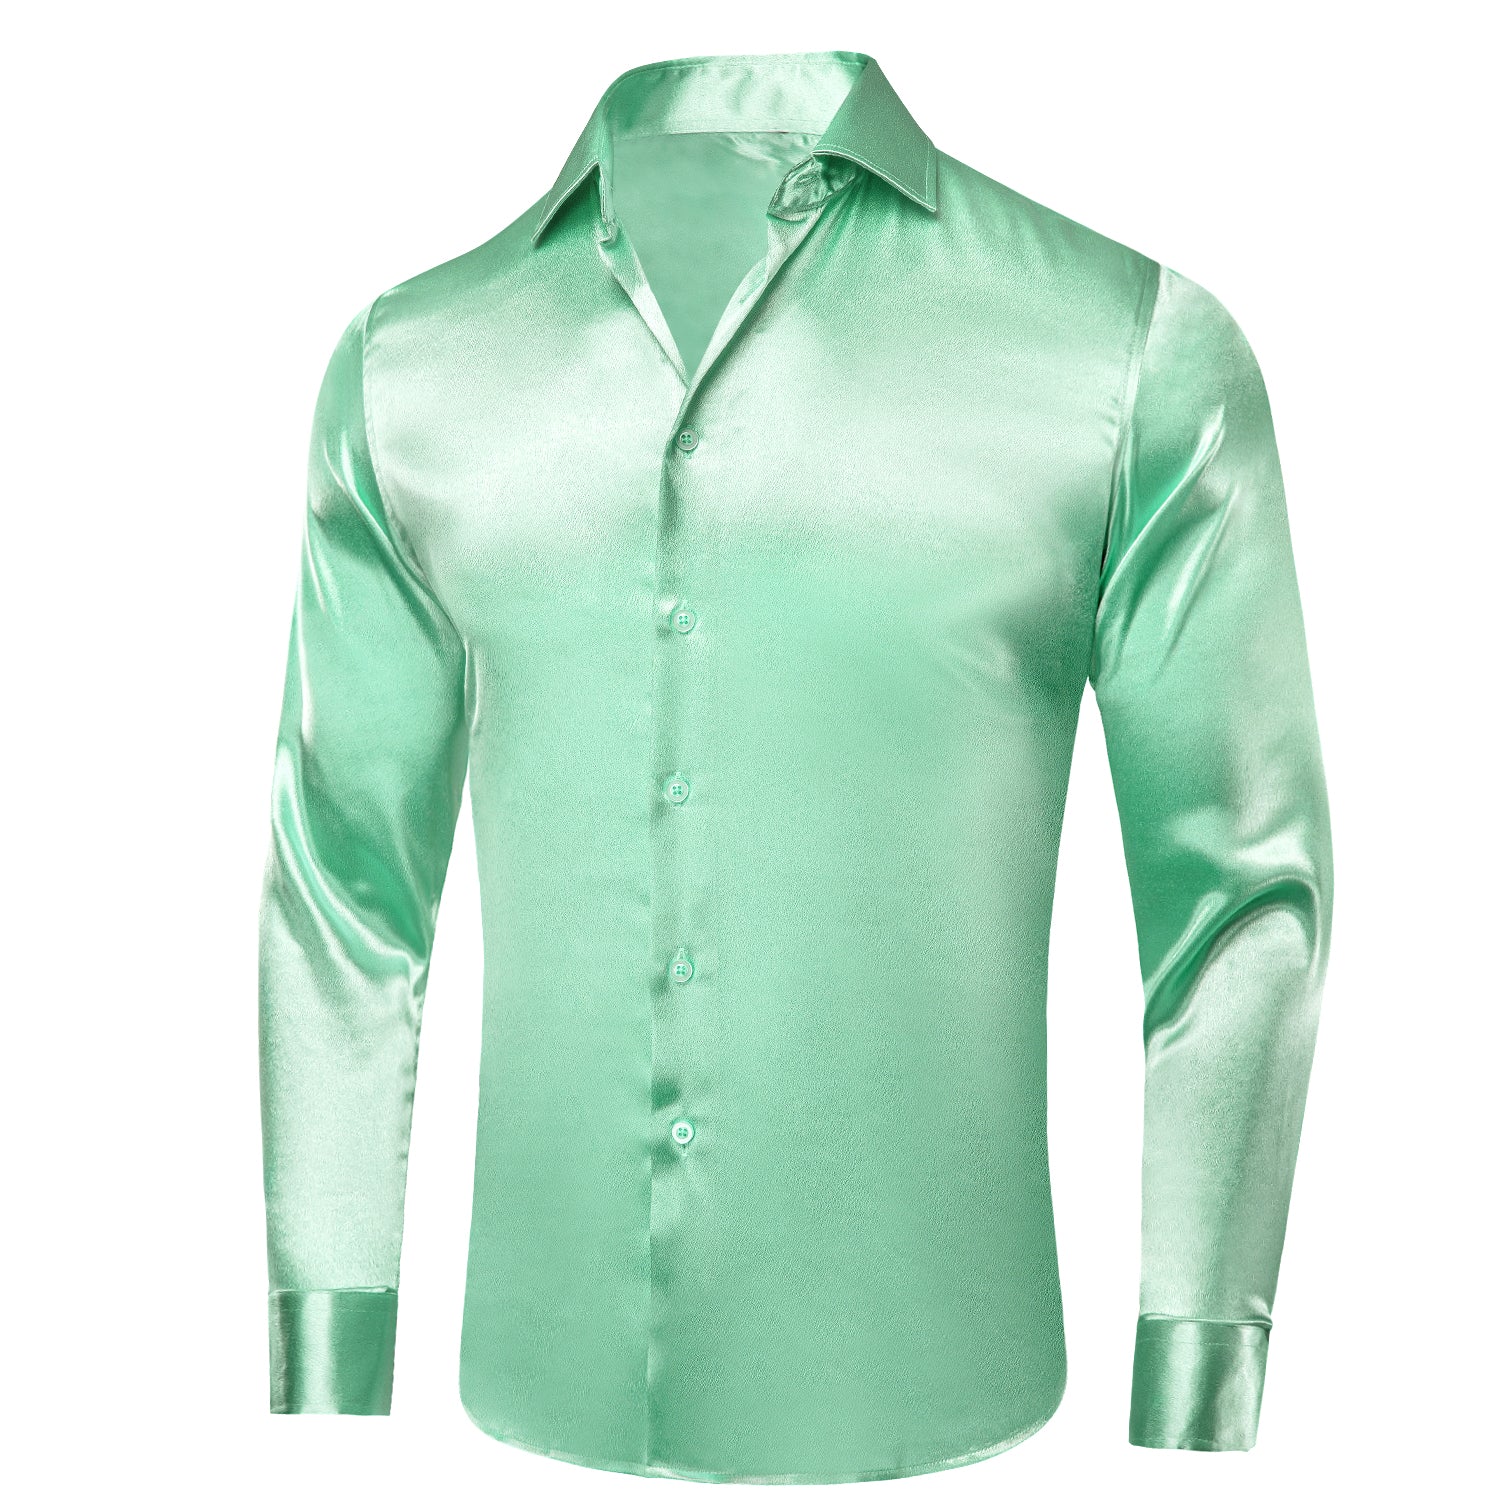 New Mint Green Satin Silk Men's Long Sleeve Shirt